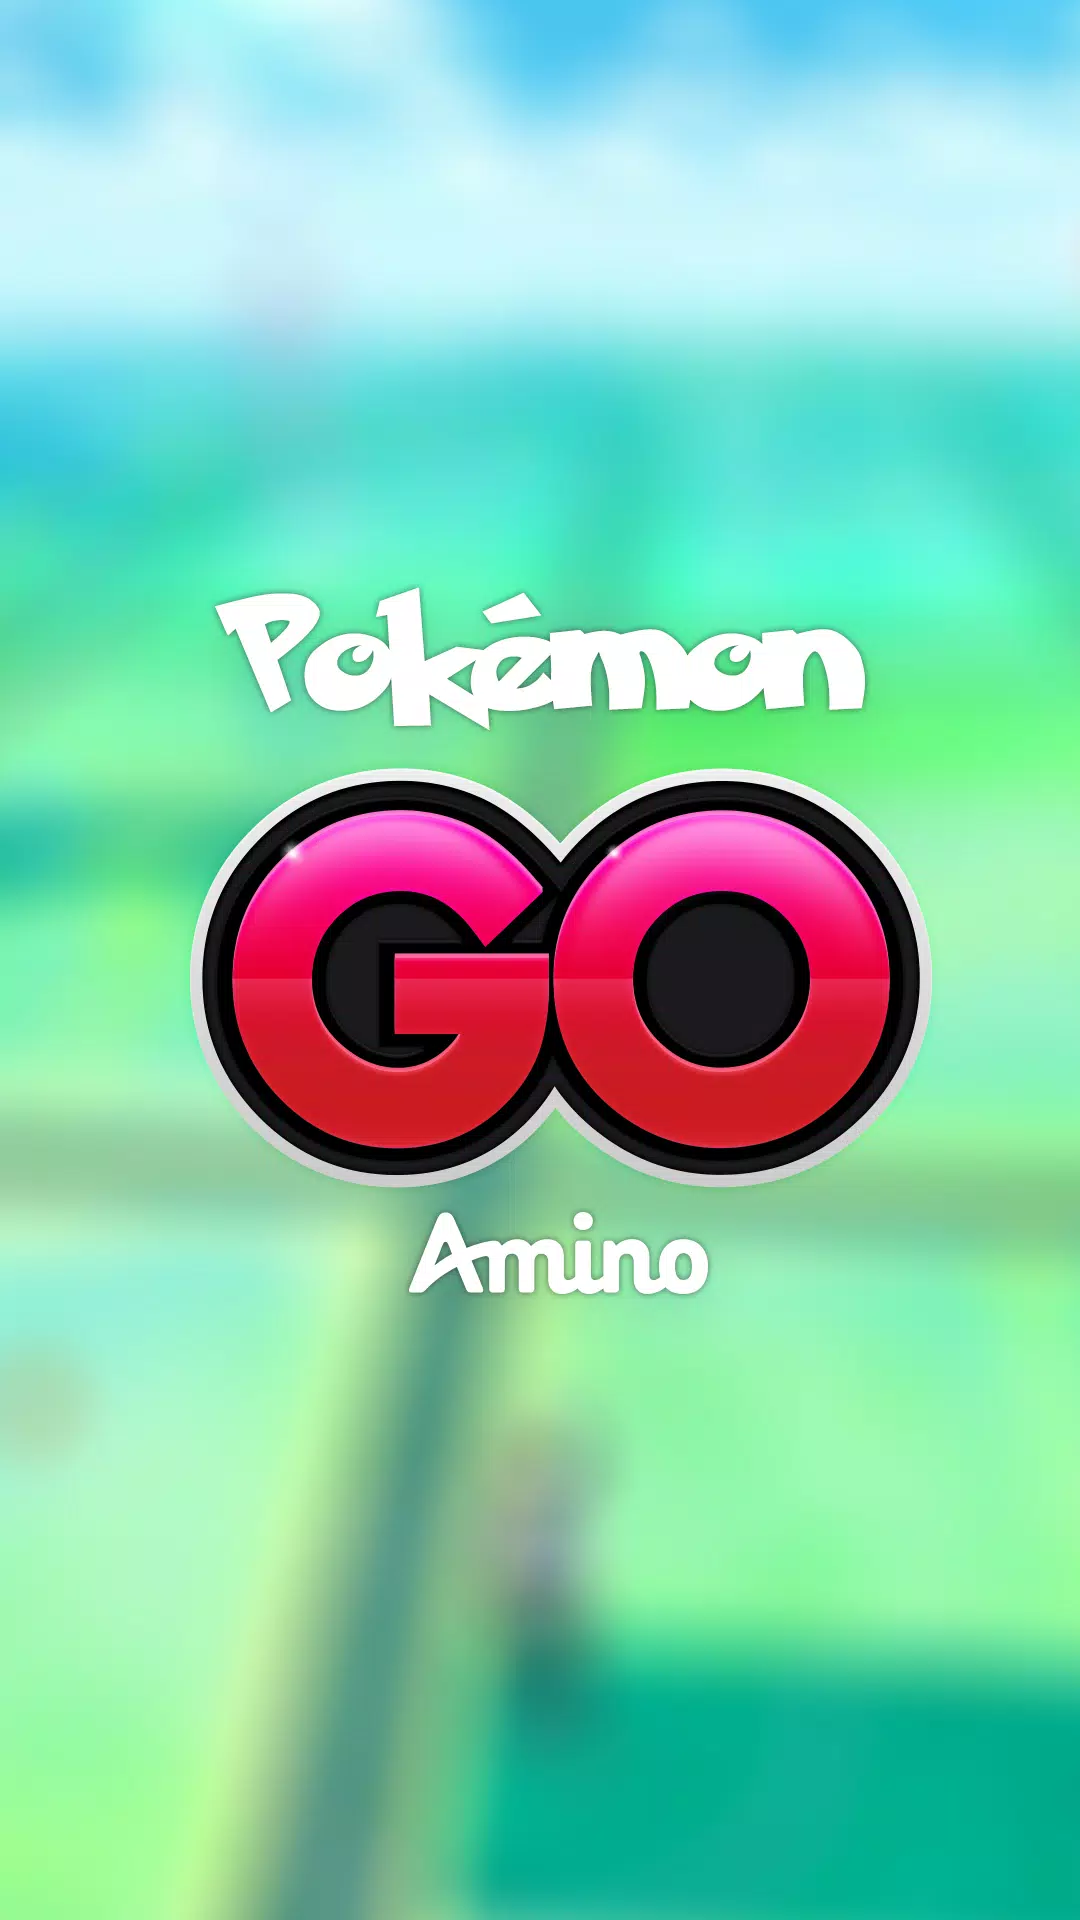 Tipos Pokémon en el TCG  •Pokémon• En Español Amino